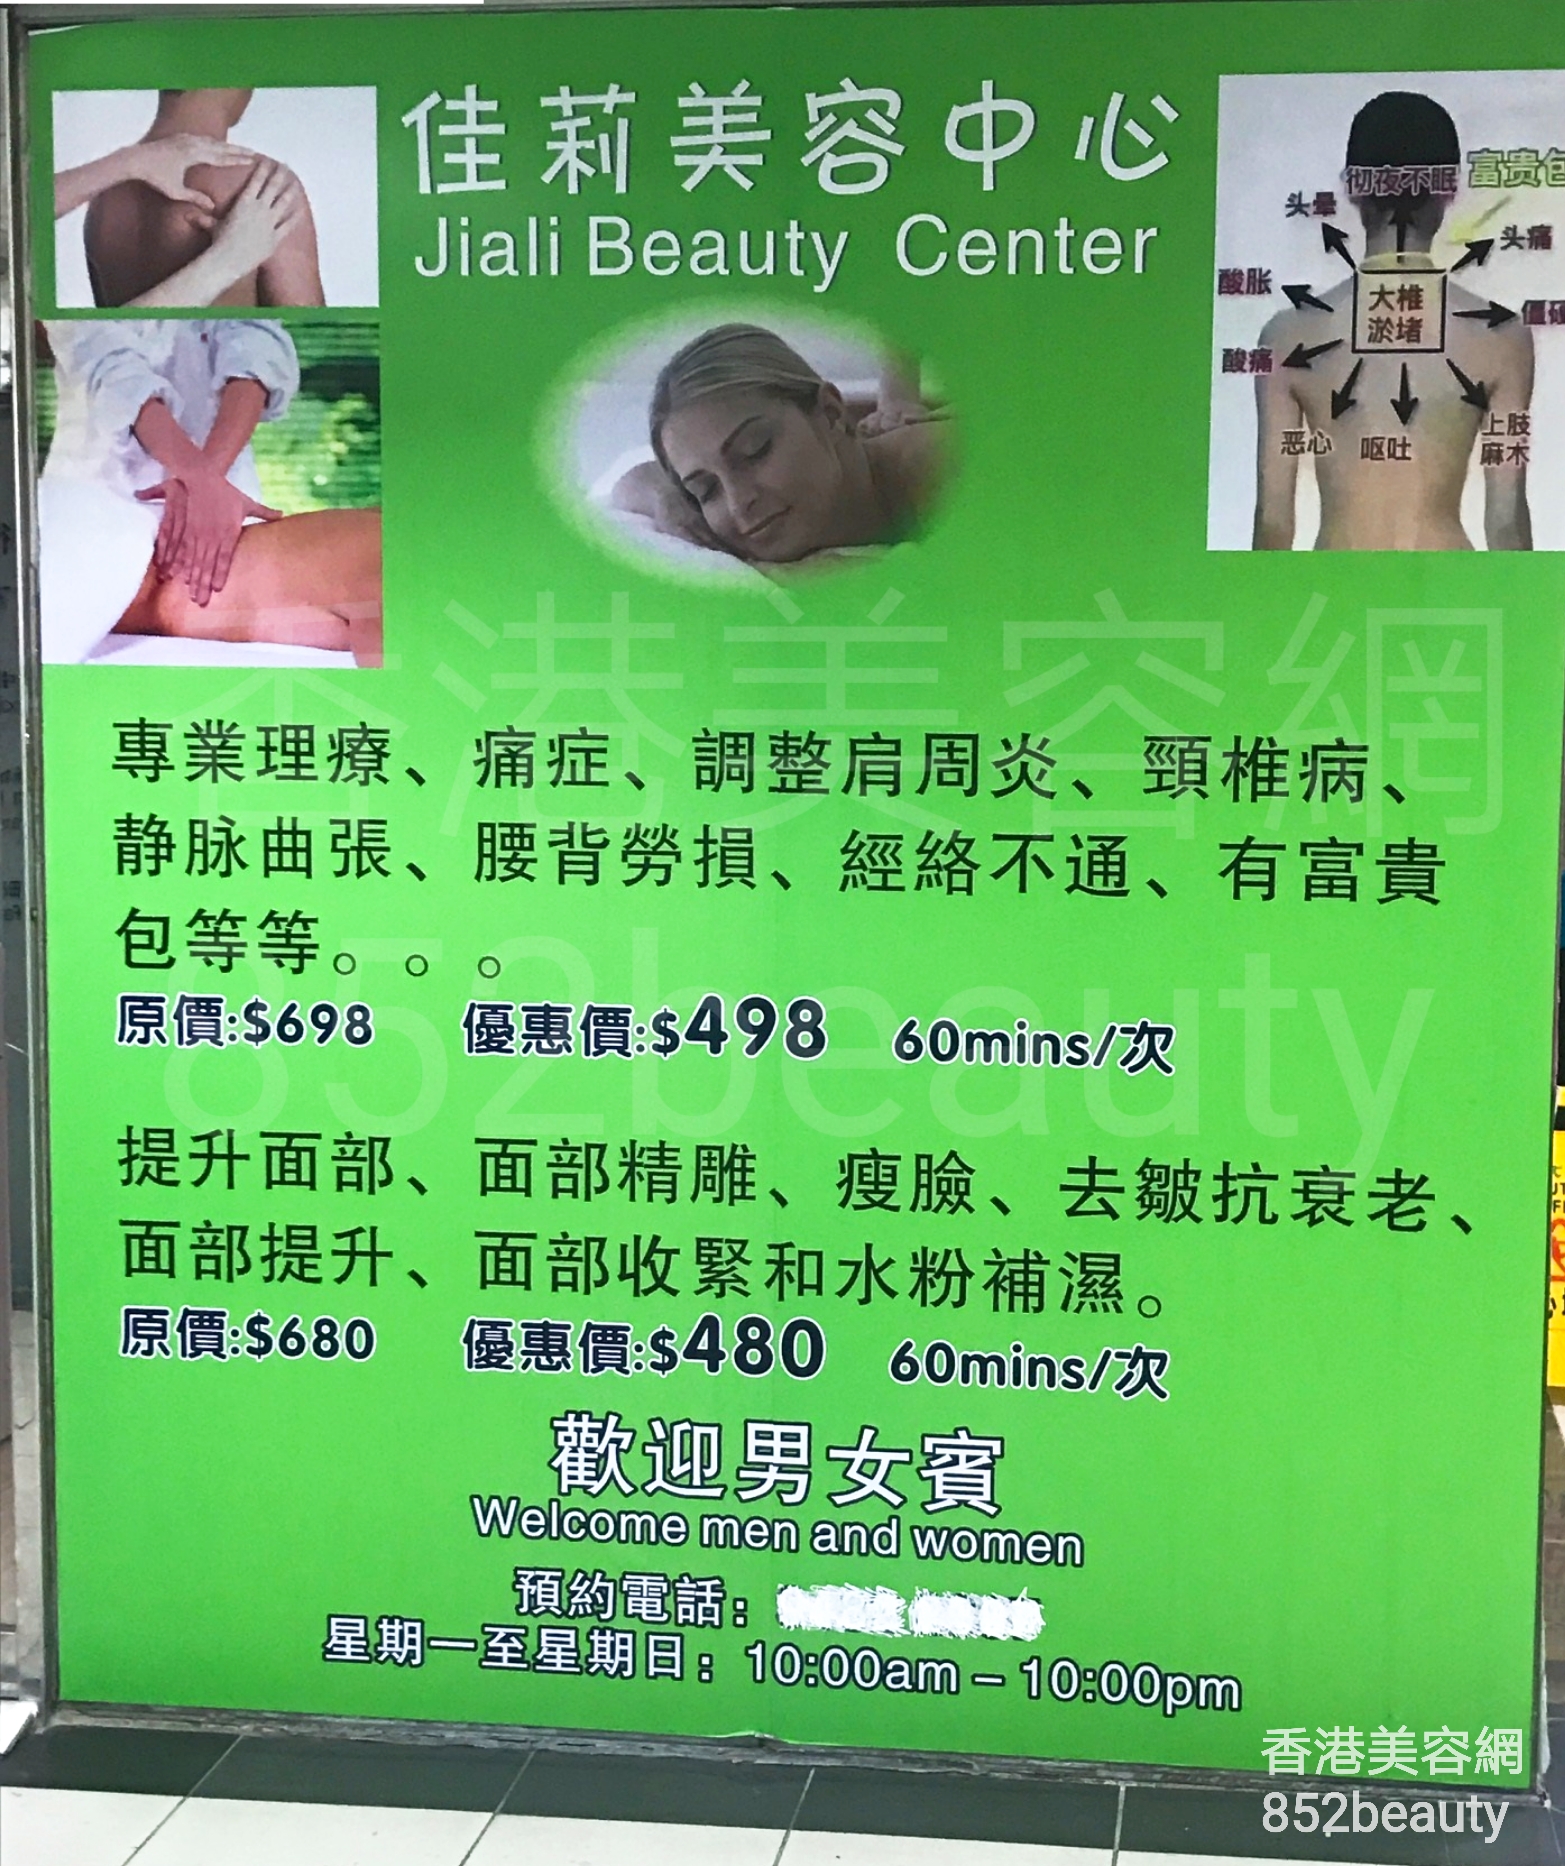 面部护理: 佳莉美容中心 Jiali Beauty Center